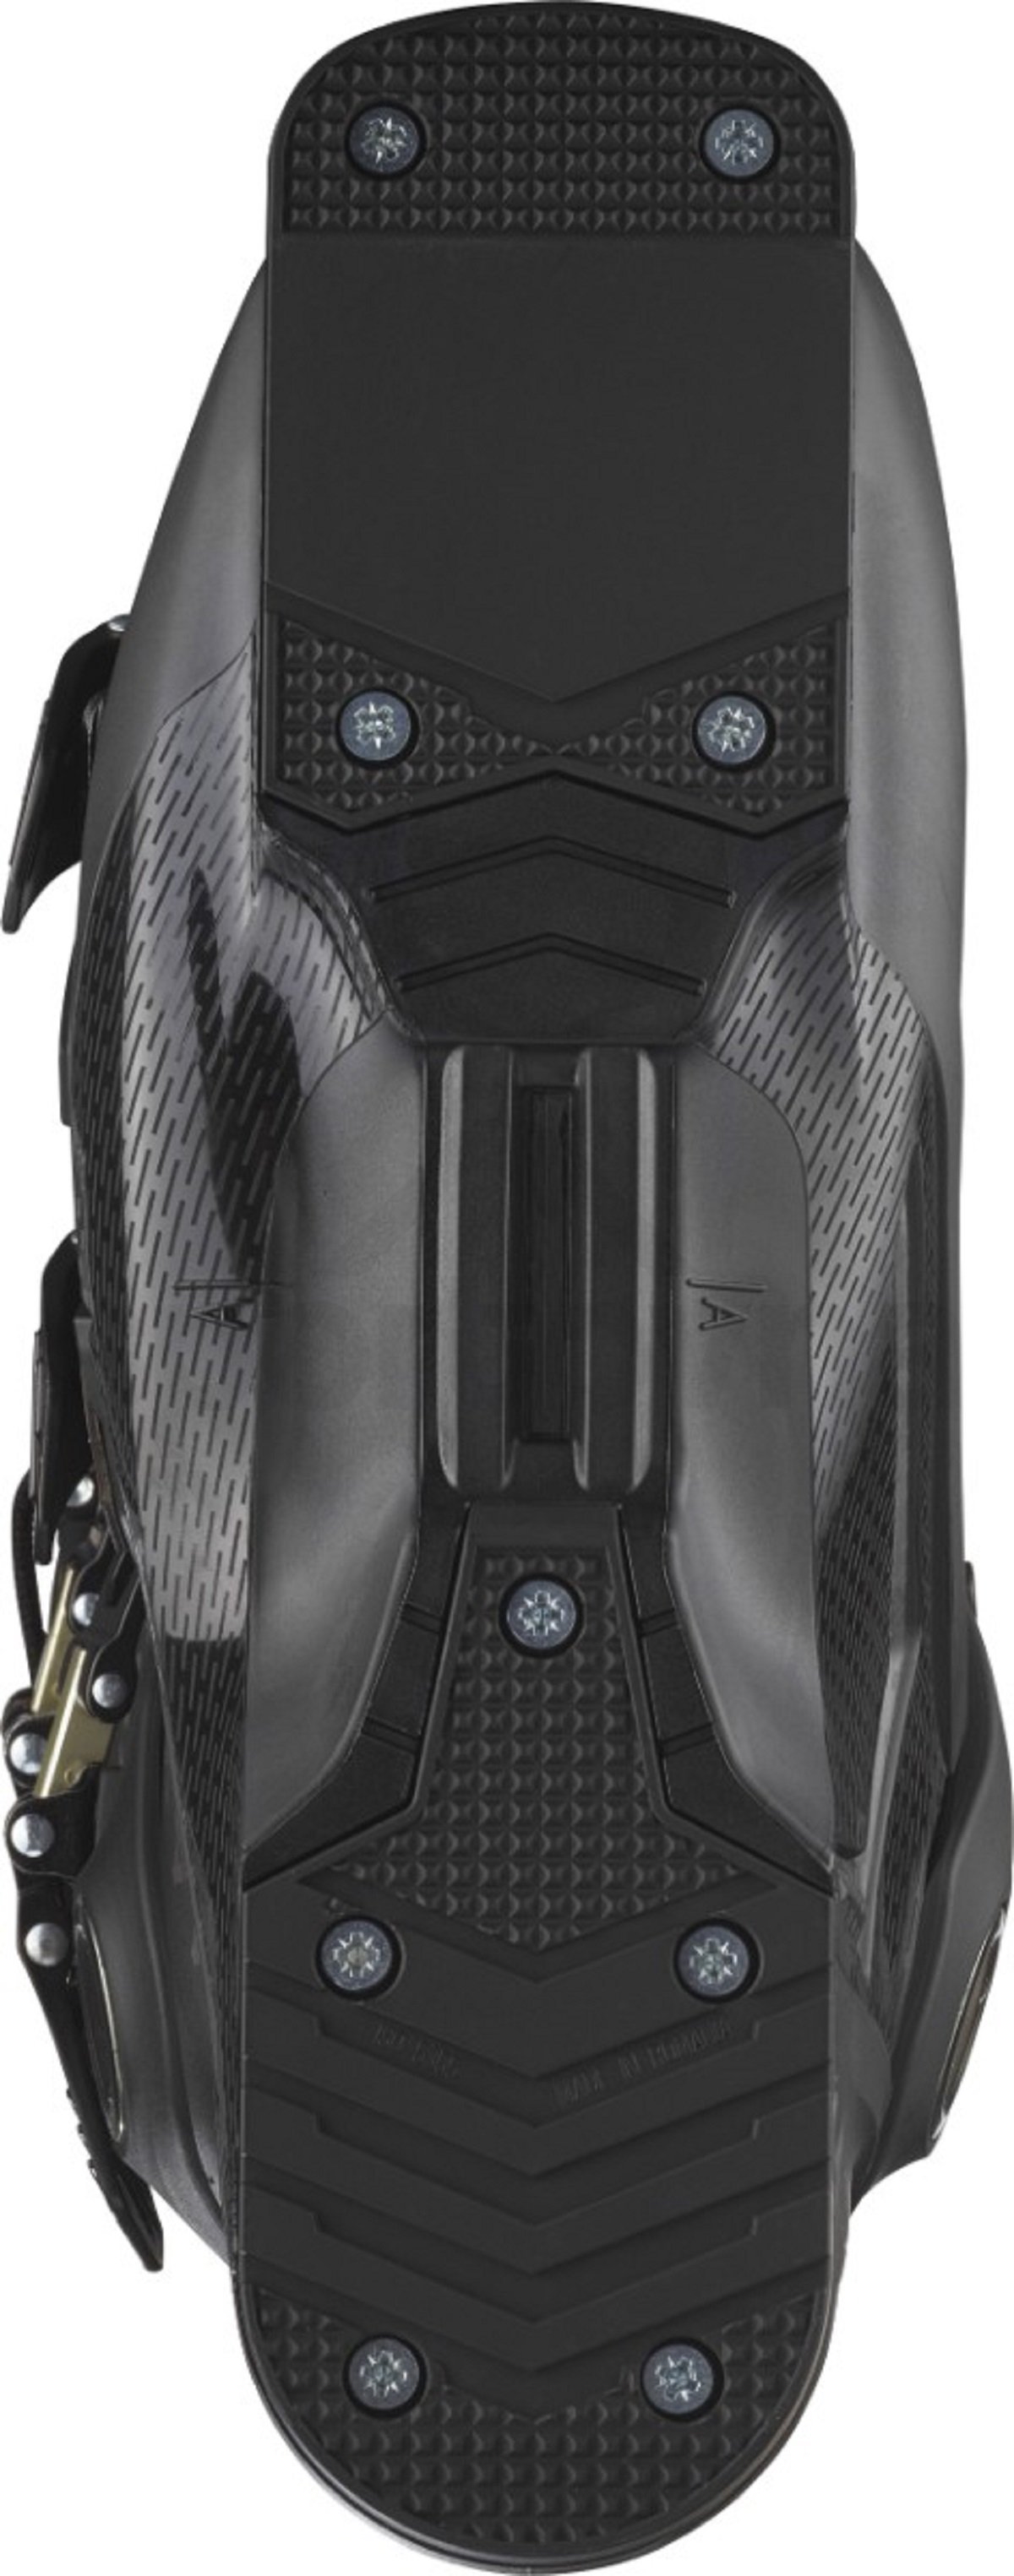 Lyžiarske topánky Salomon S/Max 130 Black M - čierna